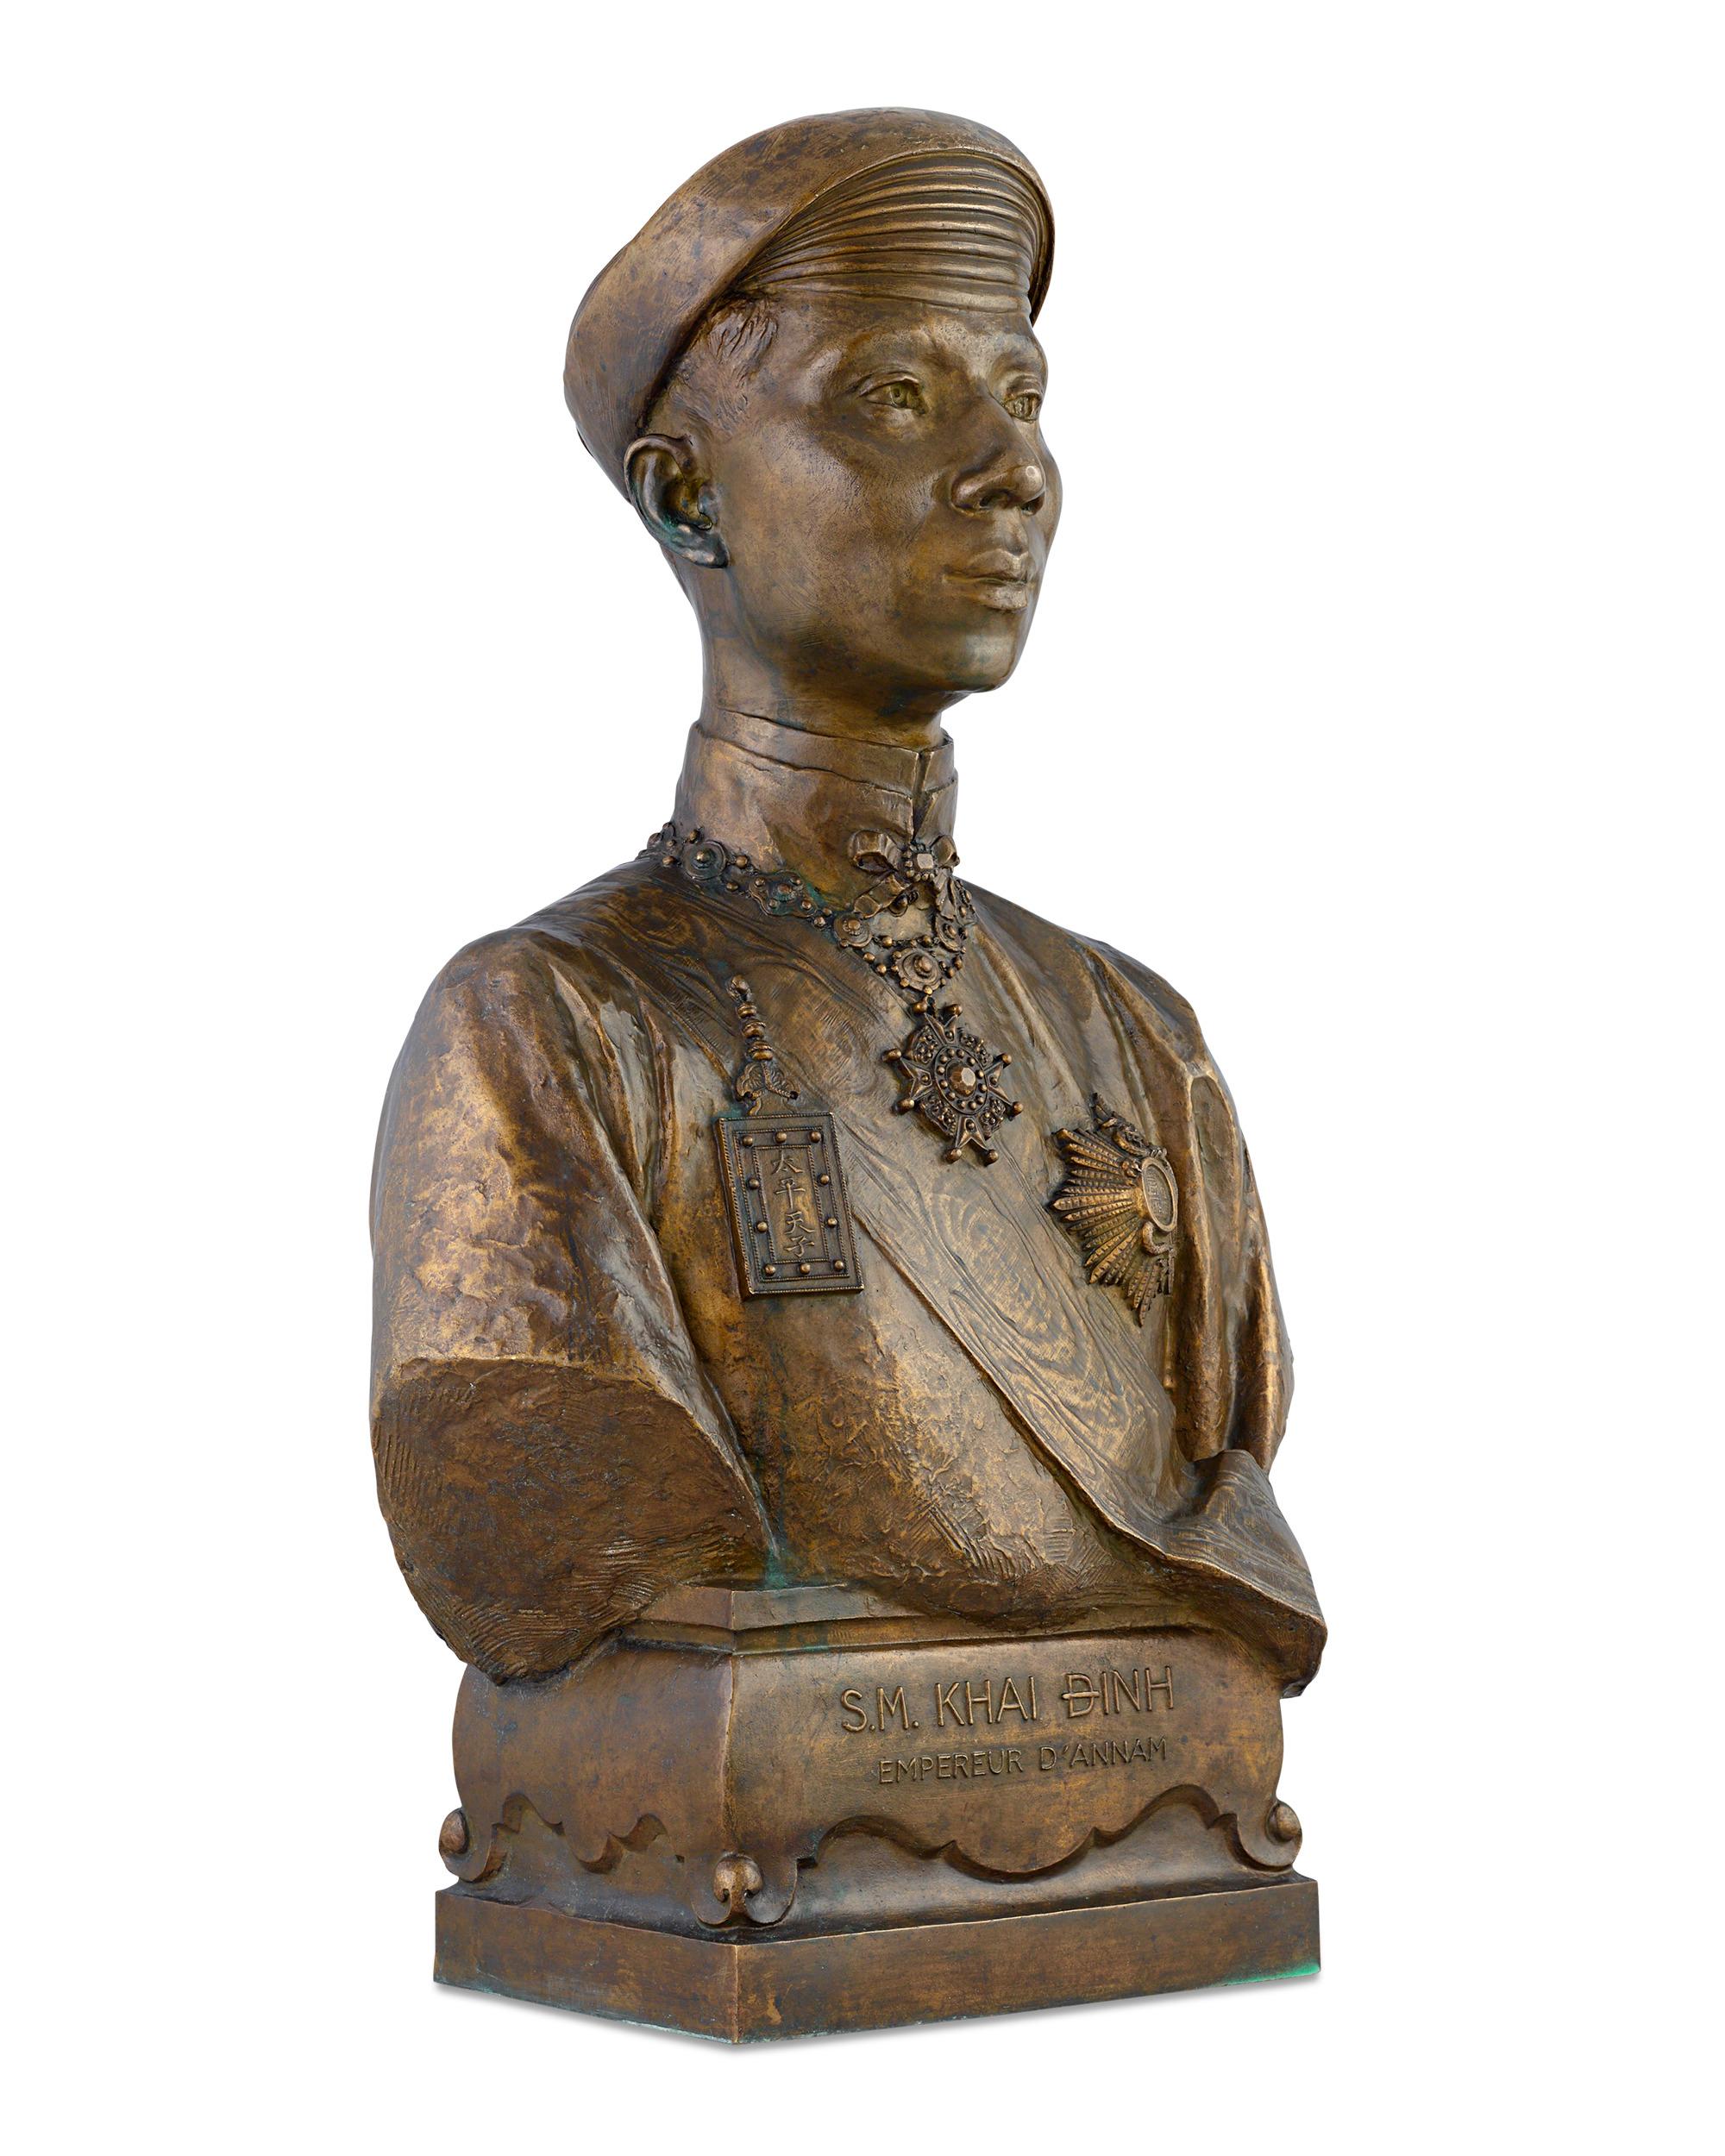 S.M Khai Dinh, Empereur d'Annam (S.M. Khai Dinh, Emperor of Annam)  - Sculpture by Paul Ducuing